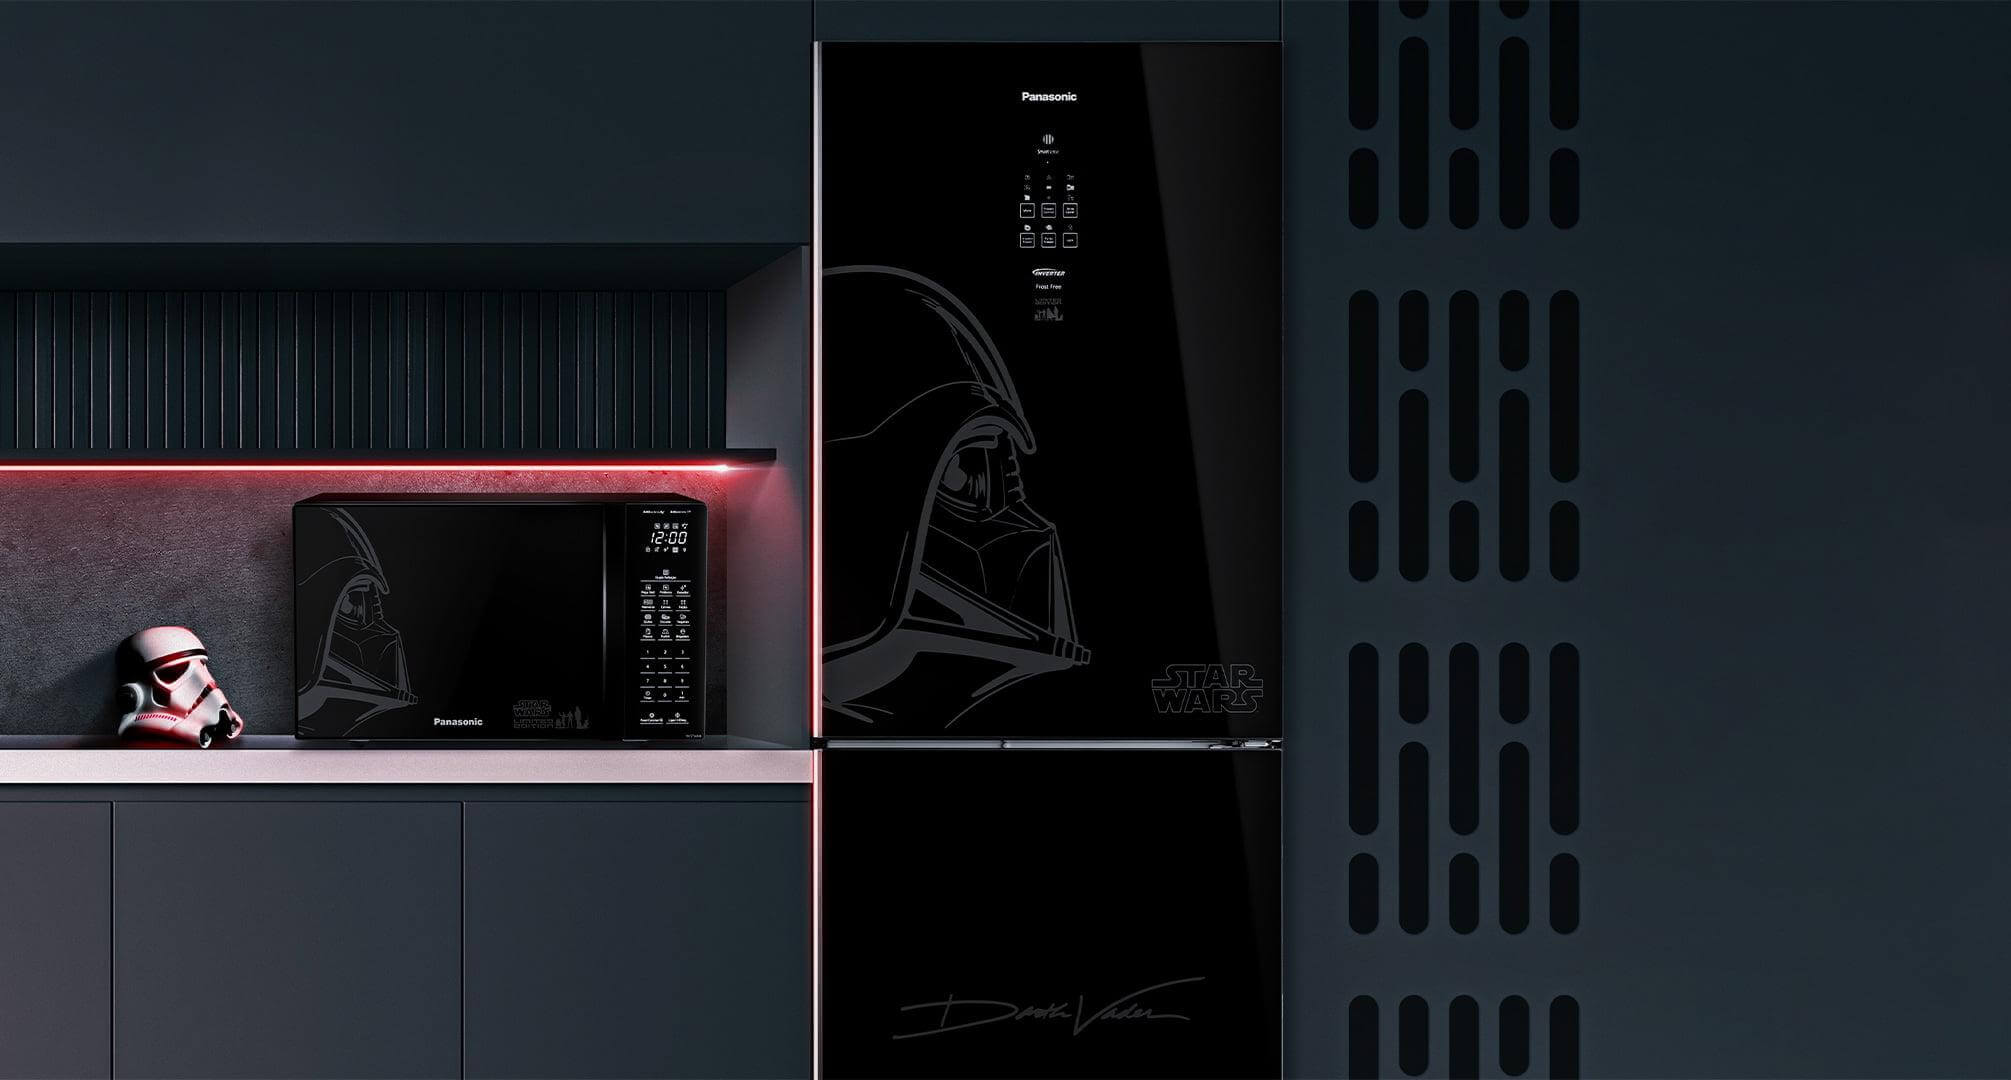 Cozinha modelo, apresentando os novos eletrodomésticos (geladeira e microondas Panasonic edição limitada Star Wars)